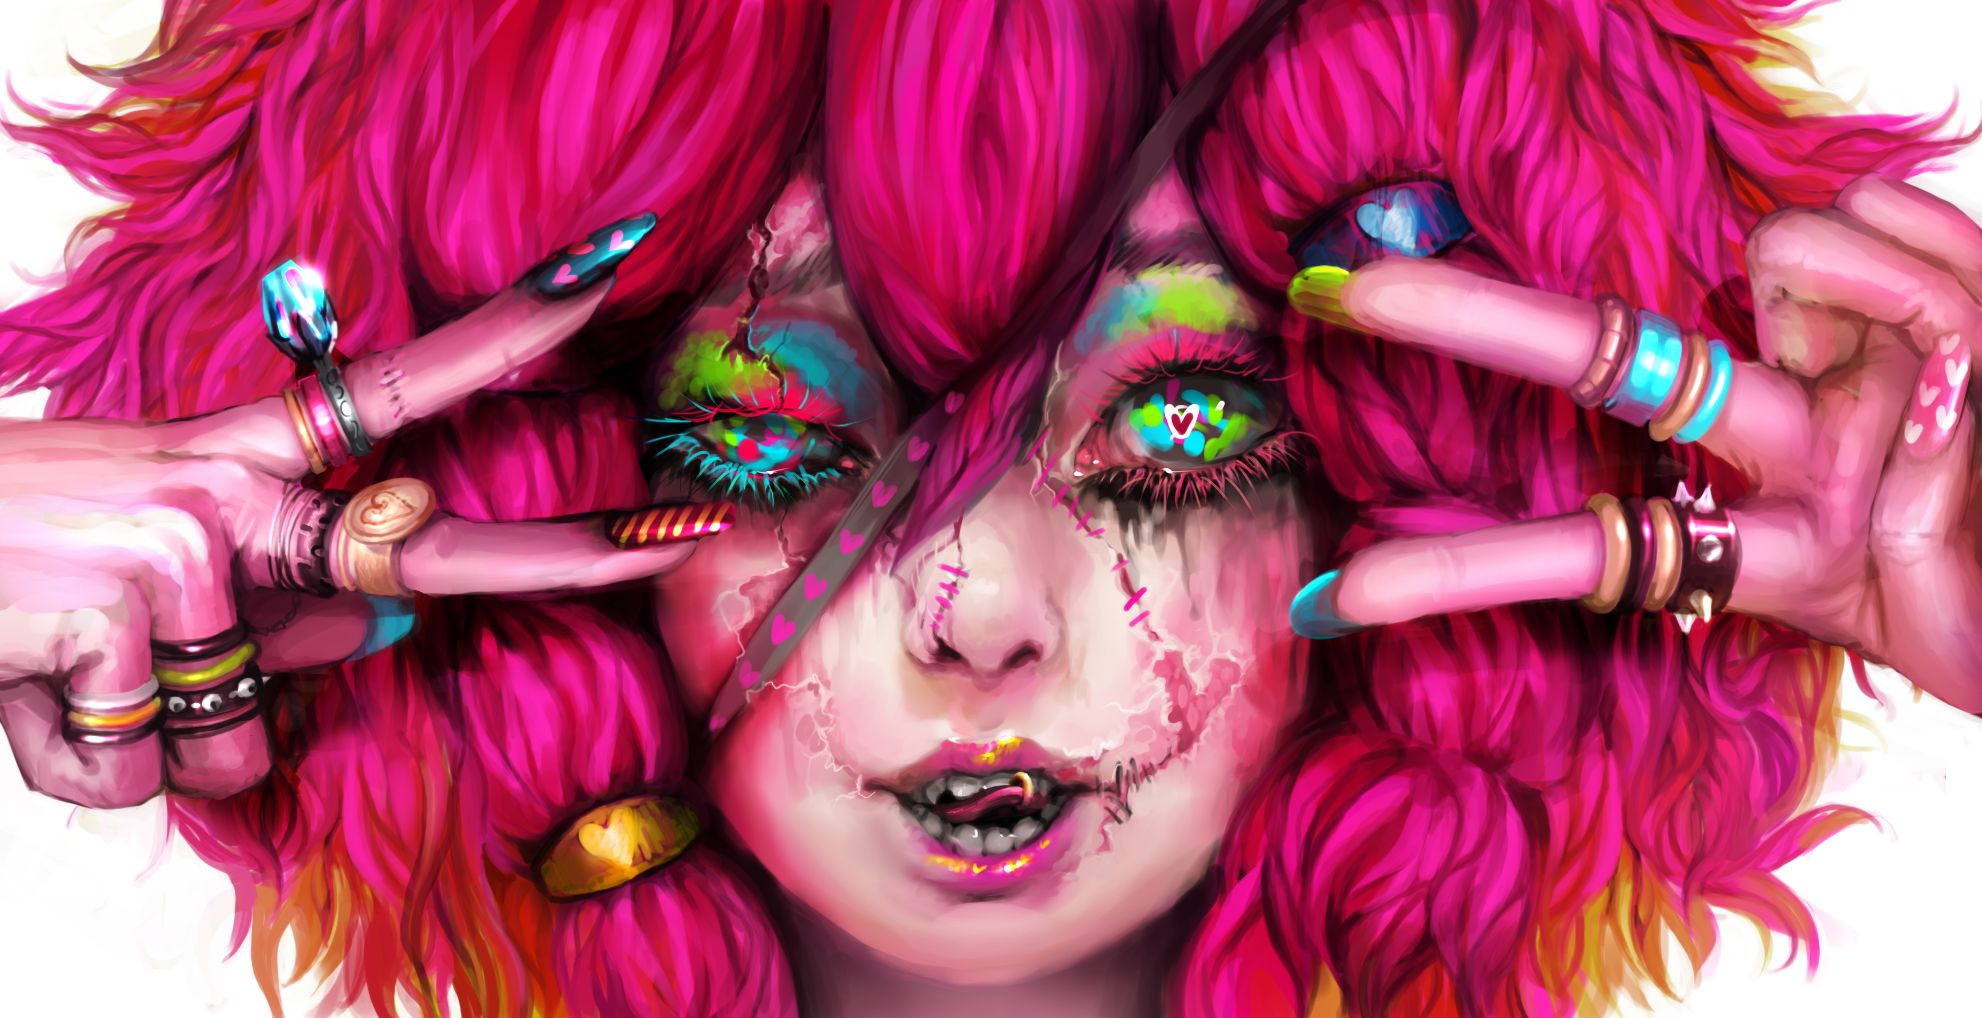 HD desktop wallpaper: Halloween, Pink, Dark, Ring, Creature, Monster, Women  download free picture #772969